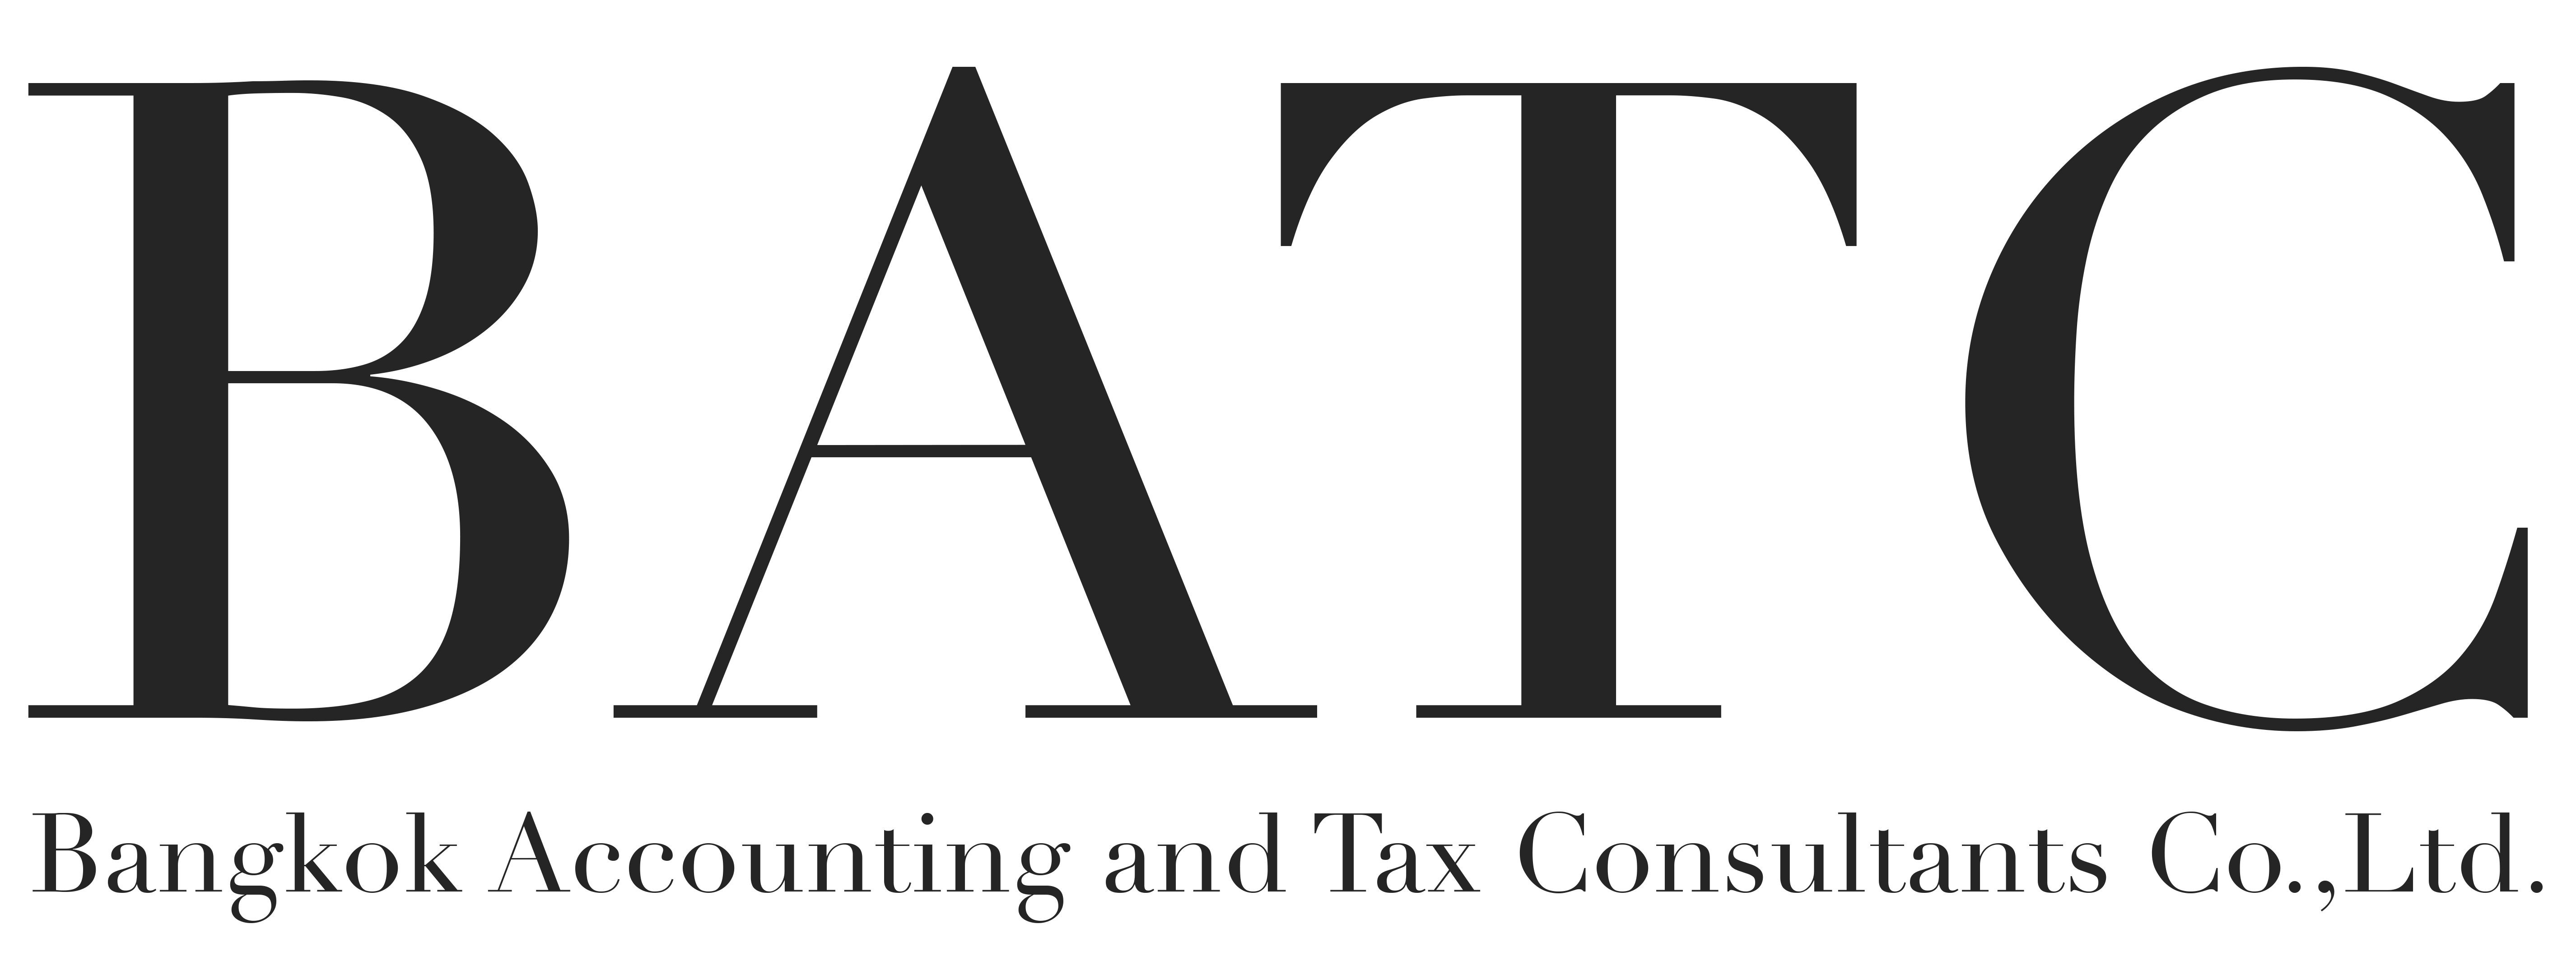 BATC-Bangkok Accounting and Tax Consultants Co., Ltd.